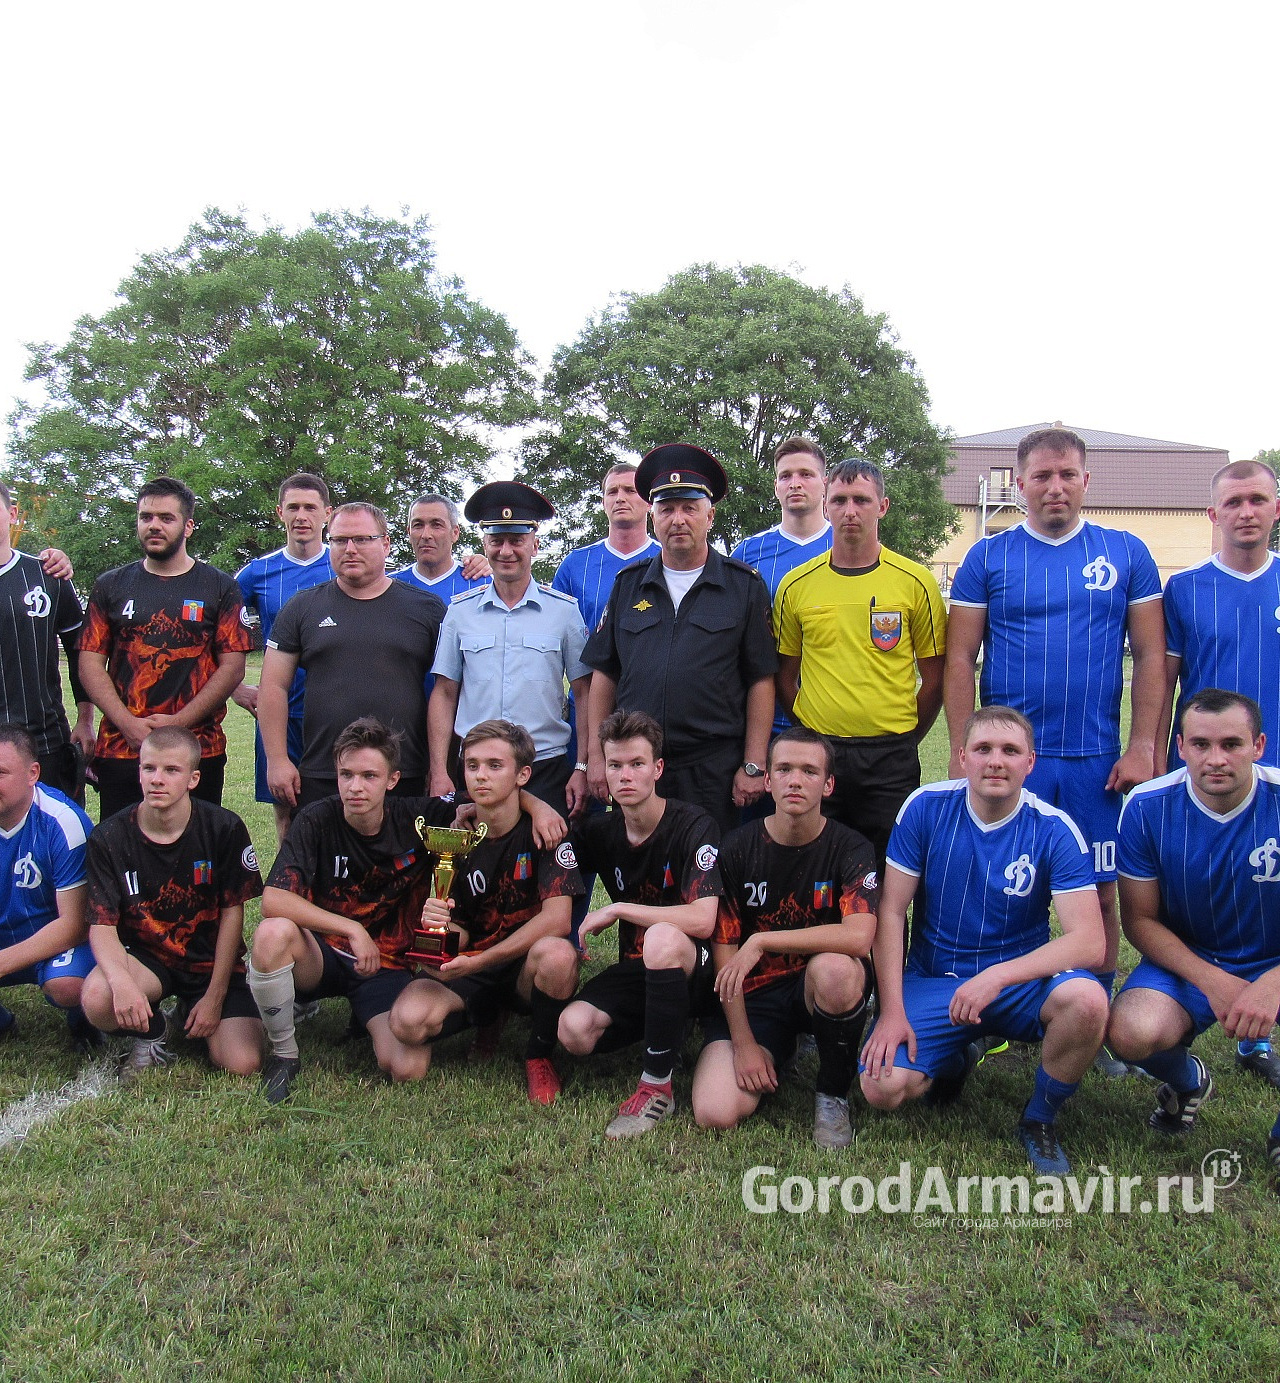 В Армавире со счетом 2:2 закончился футбольный матч между полицейскими и юными спортсменами